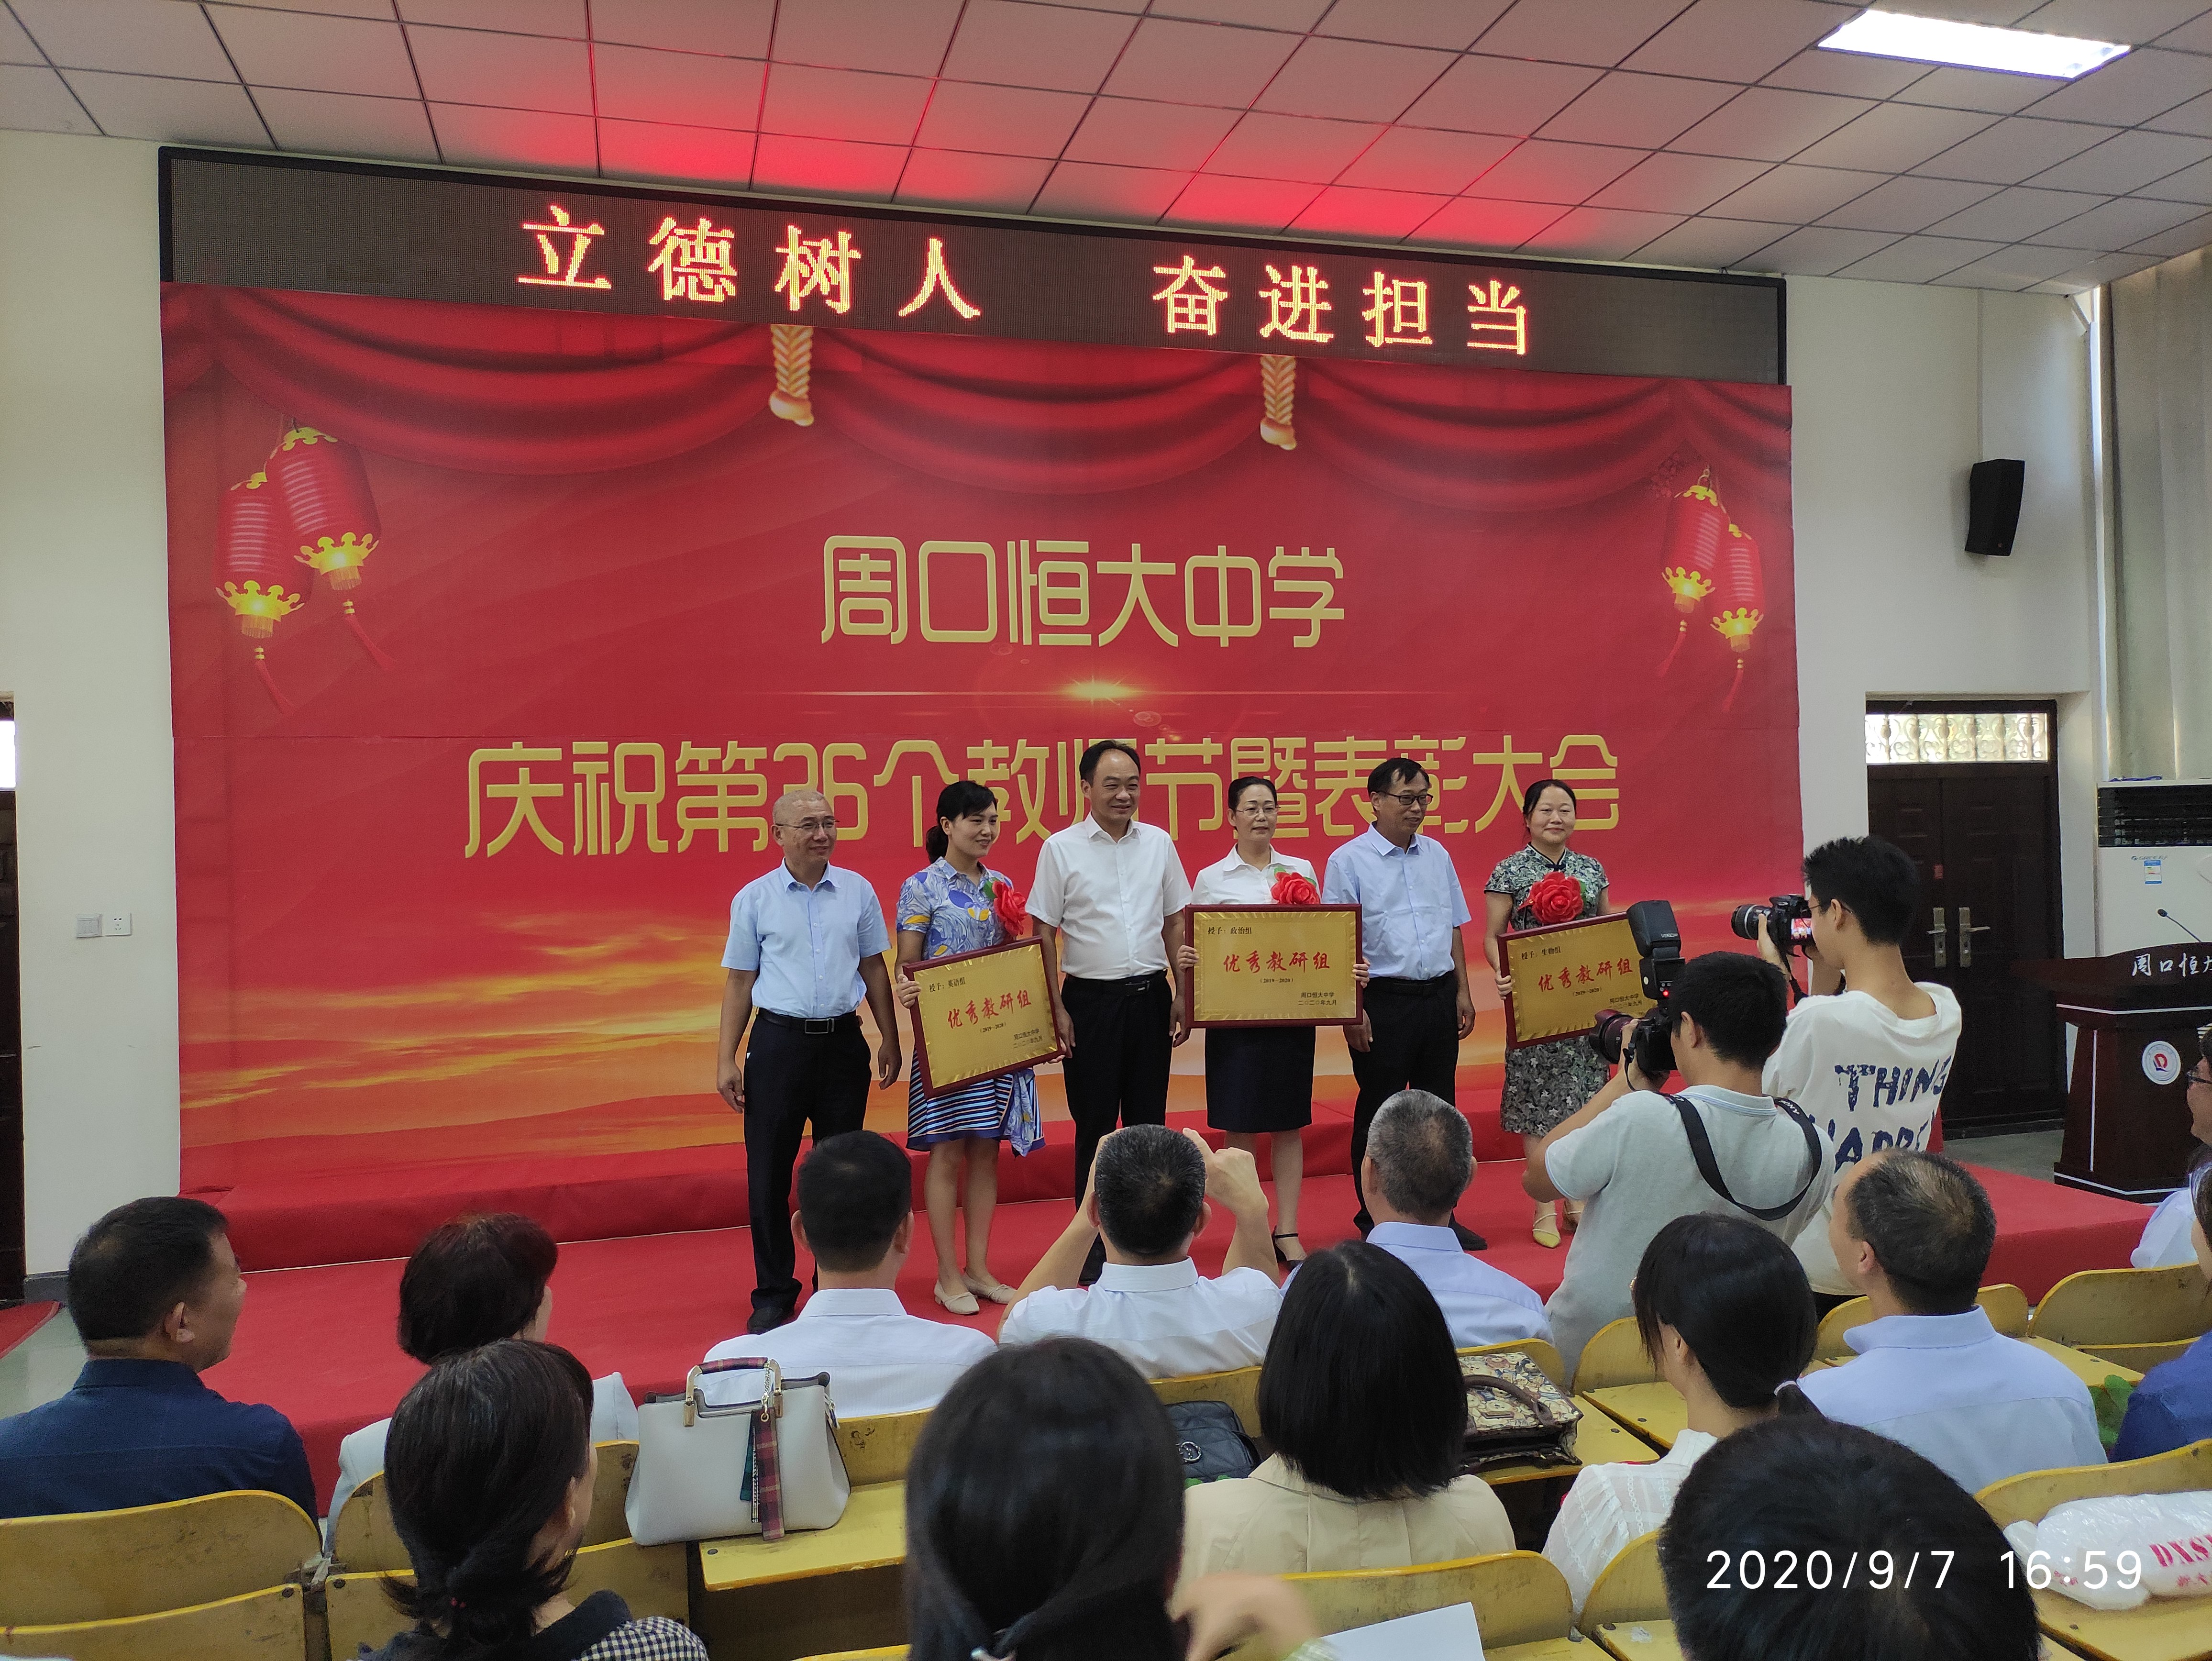 隆重庆祝第36个教师节暨表彰大会